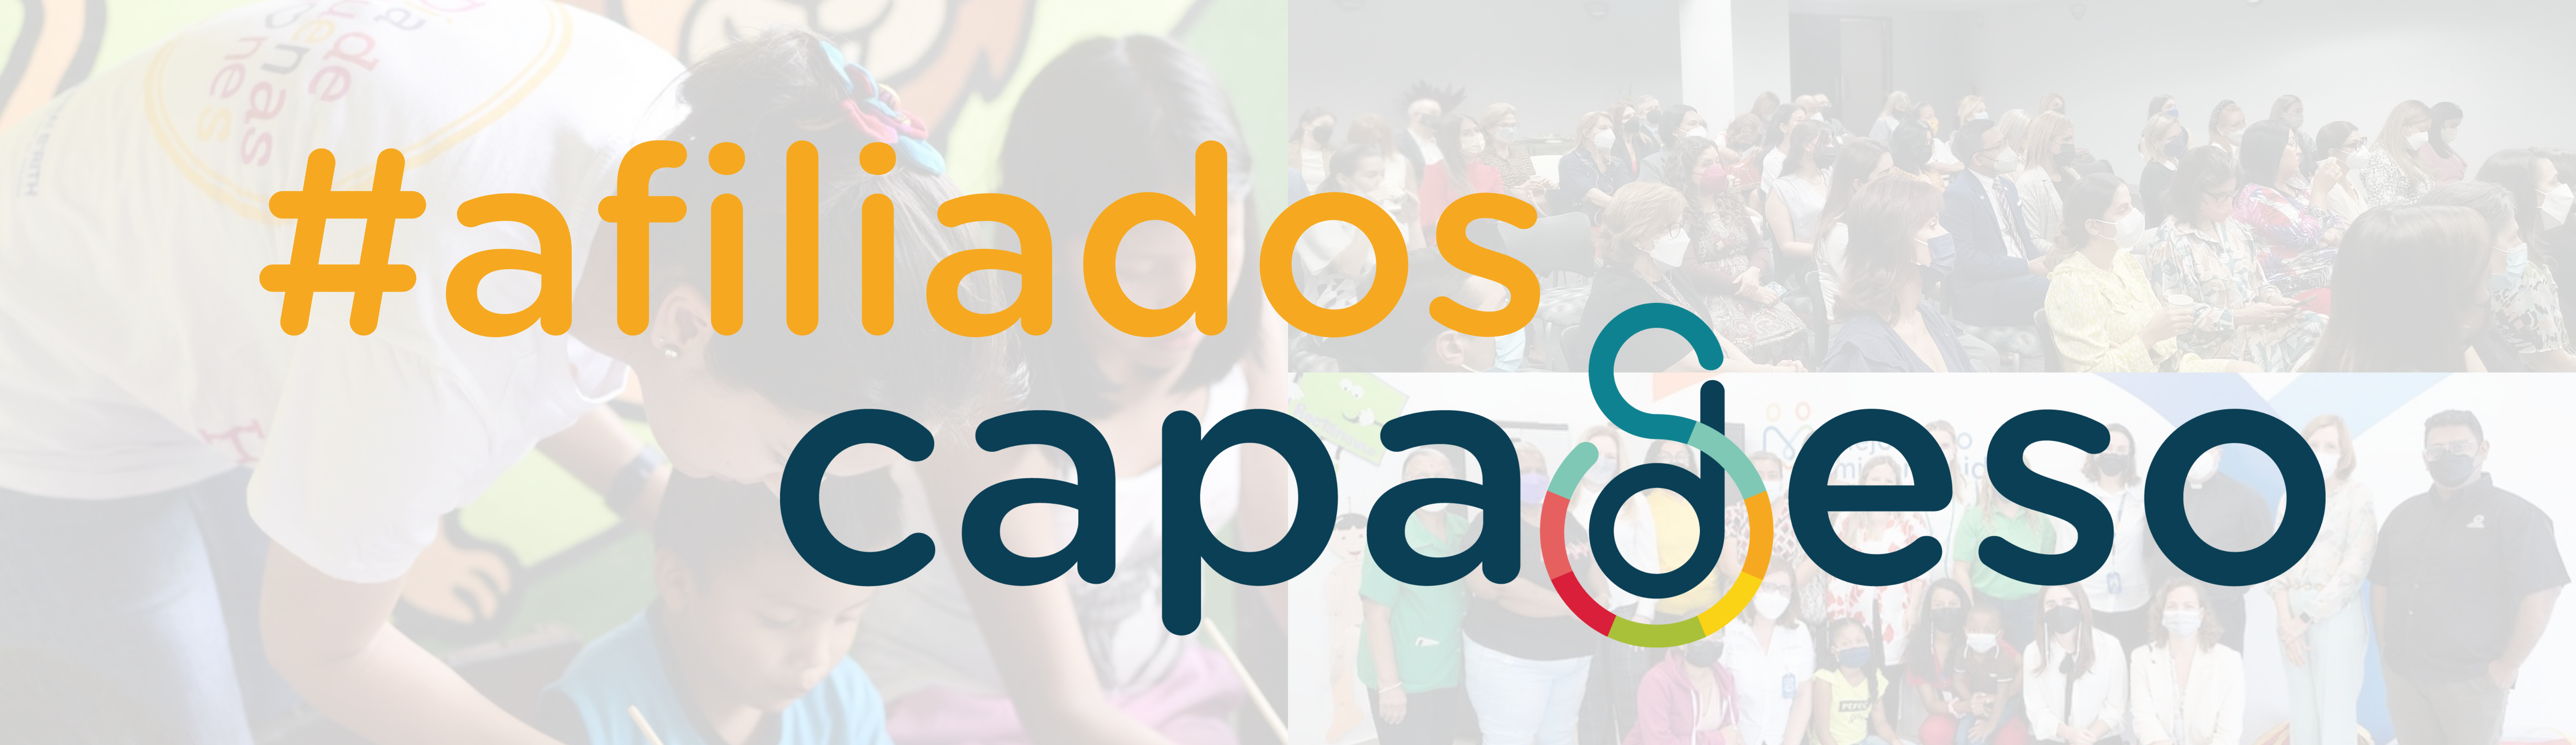 (c) Capadeso.org